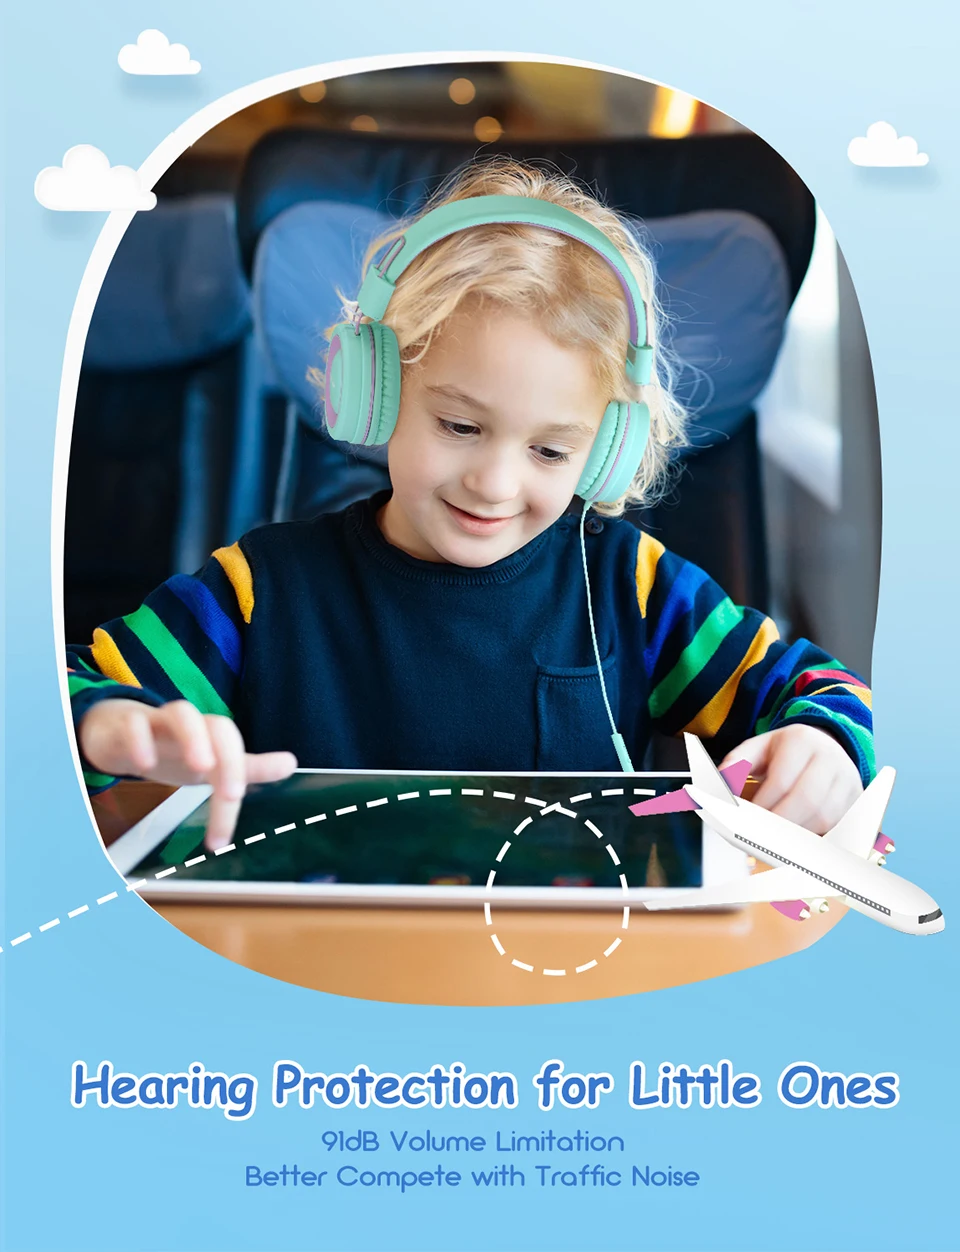 Mpow CH8 детские наушники Проводная гарнитура складная 91dB объем ограничен Защита слуха детские наушники для подростков девочек мальчиков